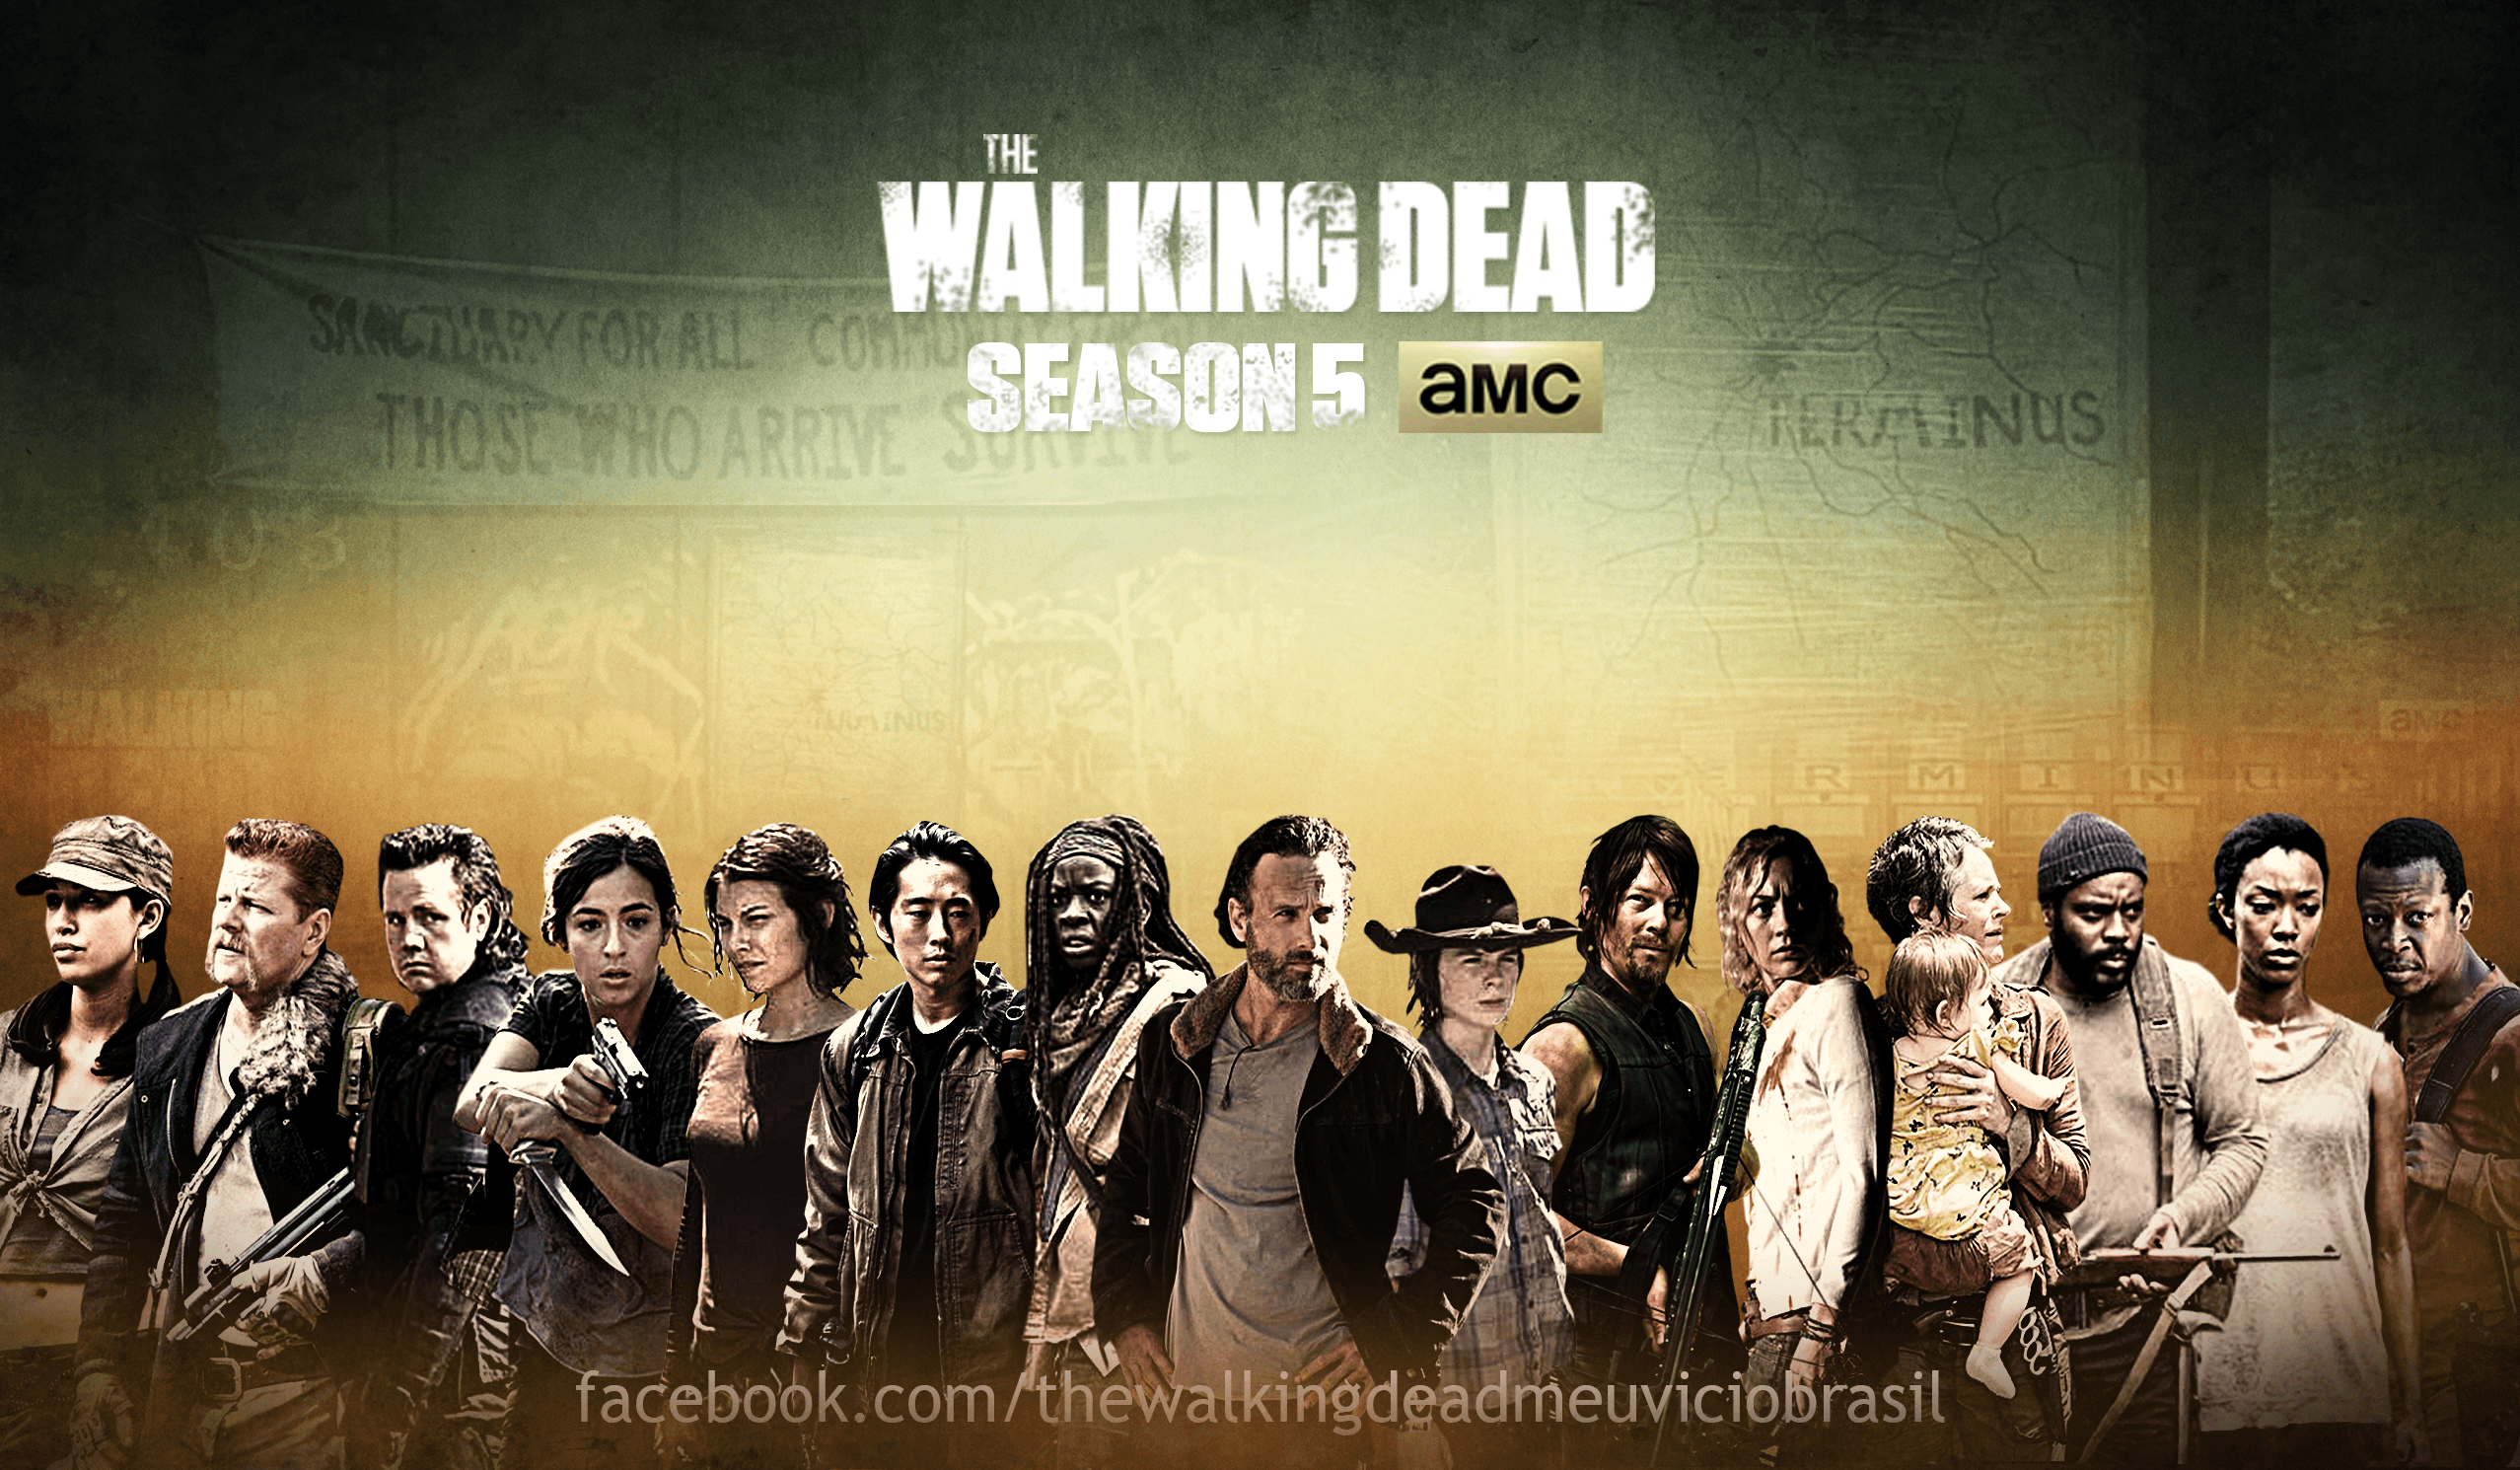 The walking dead season 5 cast poster